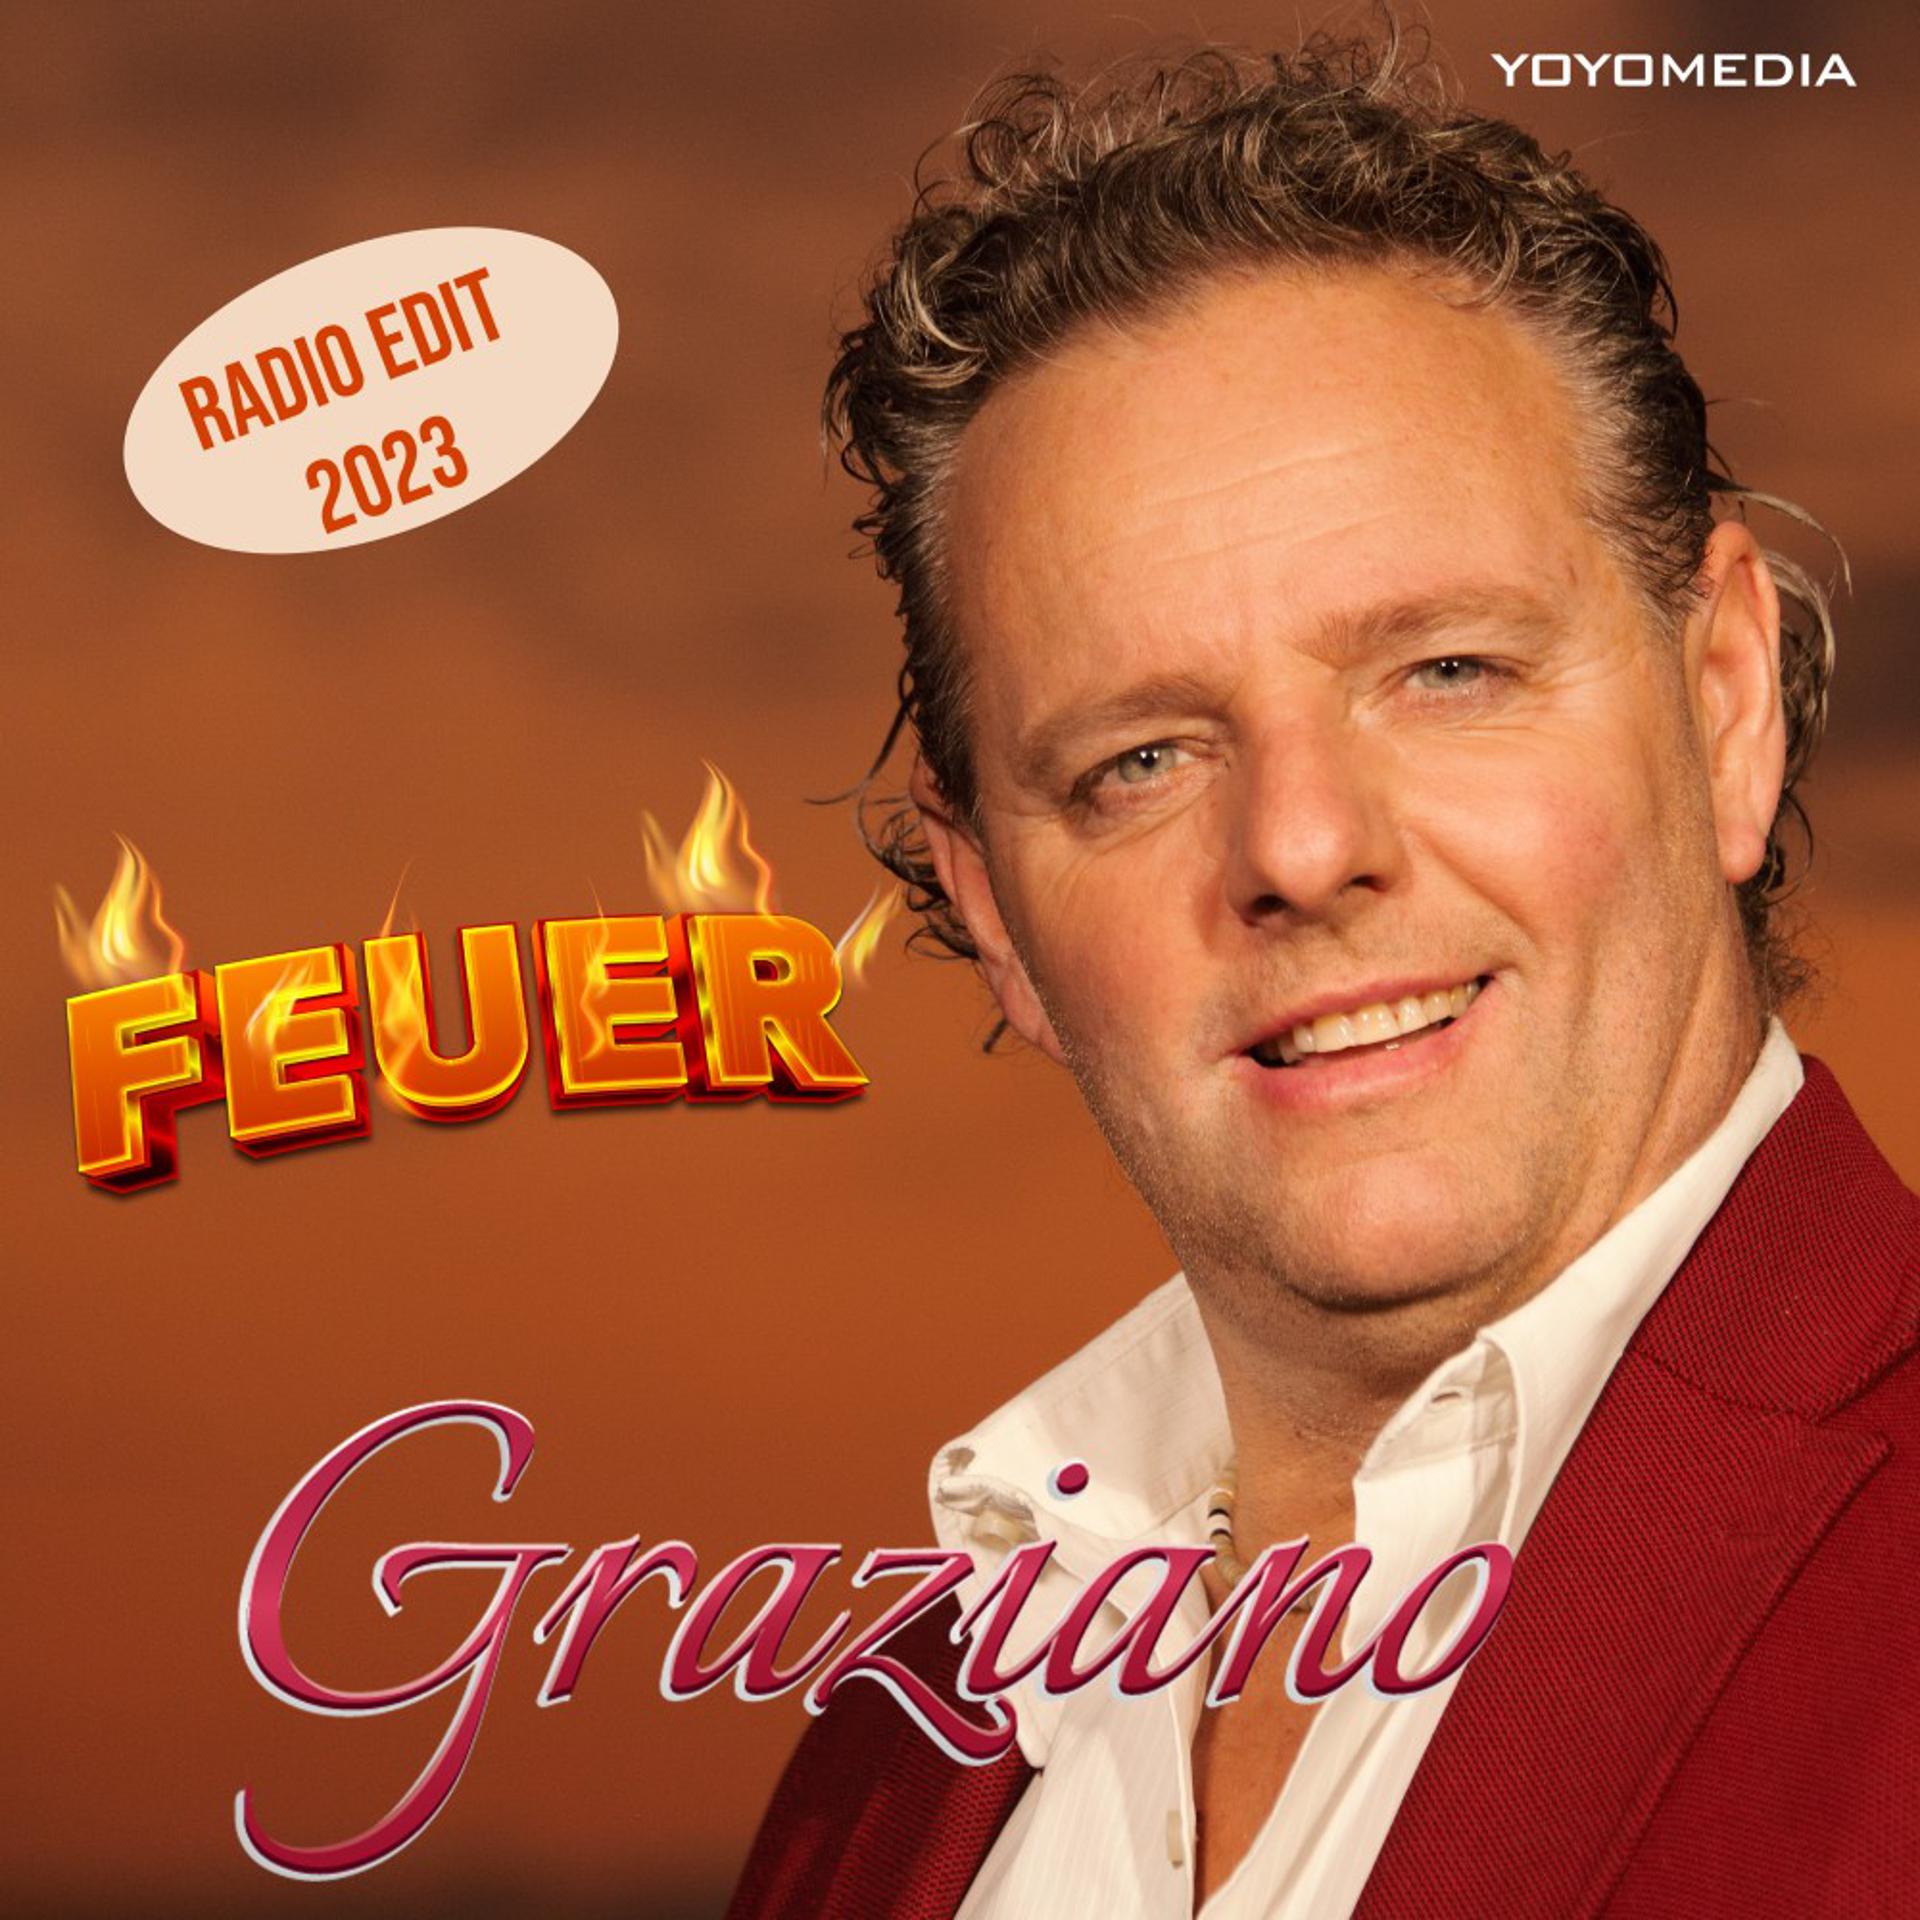 Постер к треку Graziano - Feuer (Radio Edit 2023)